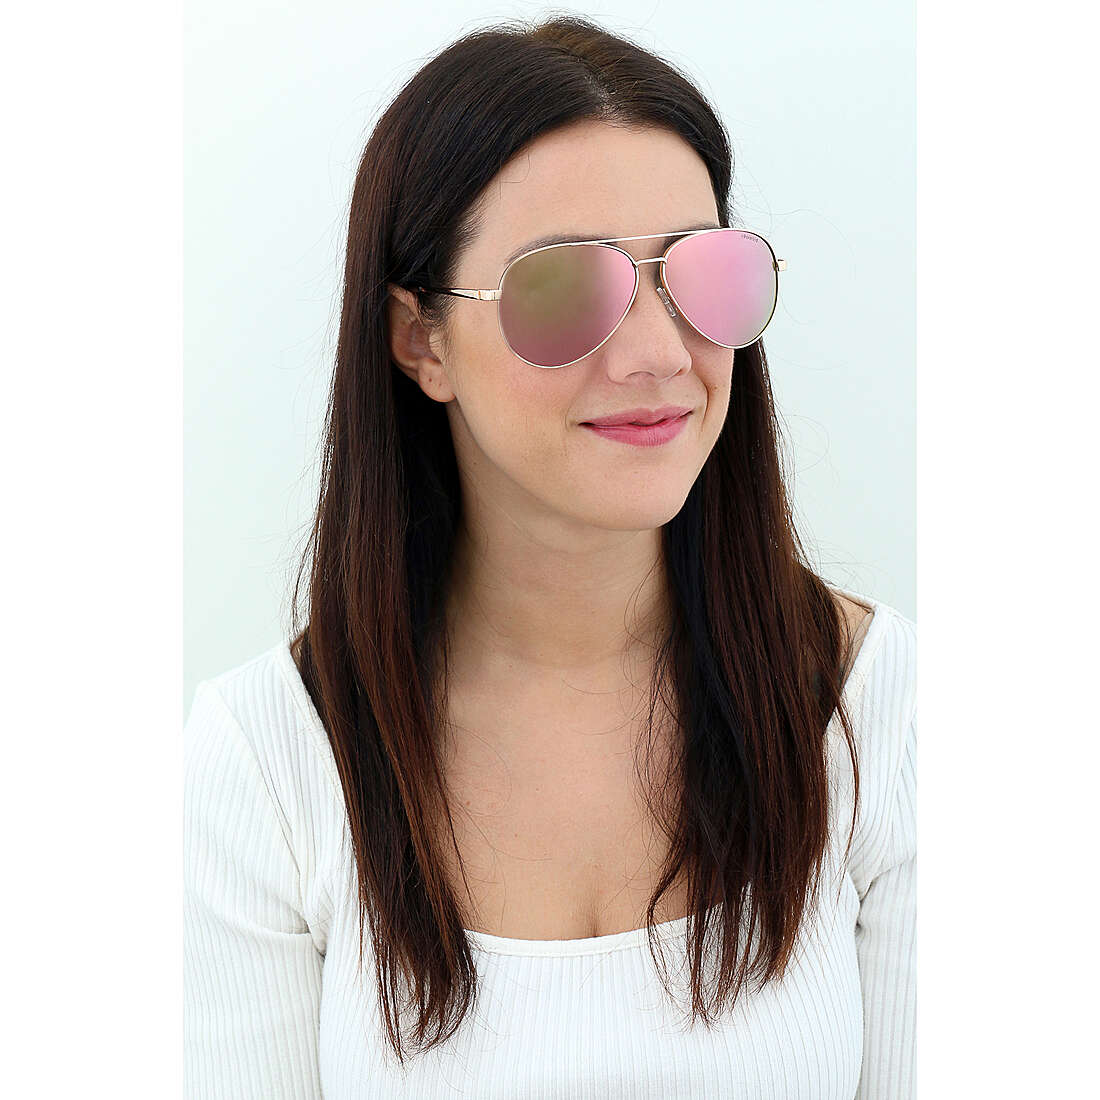 Polaroid occhiali da sole Cool donna 201880210610J indosso